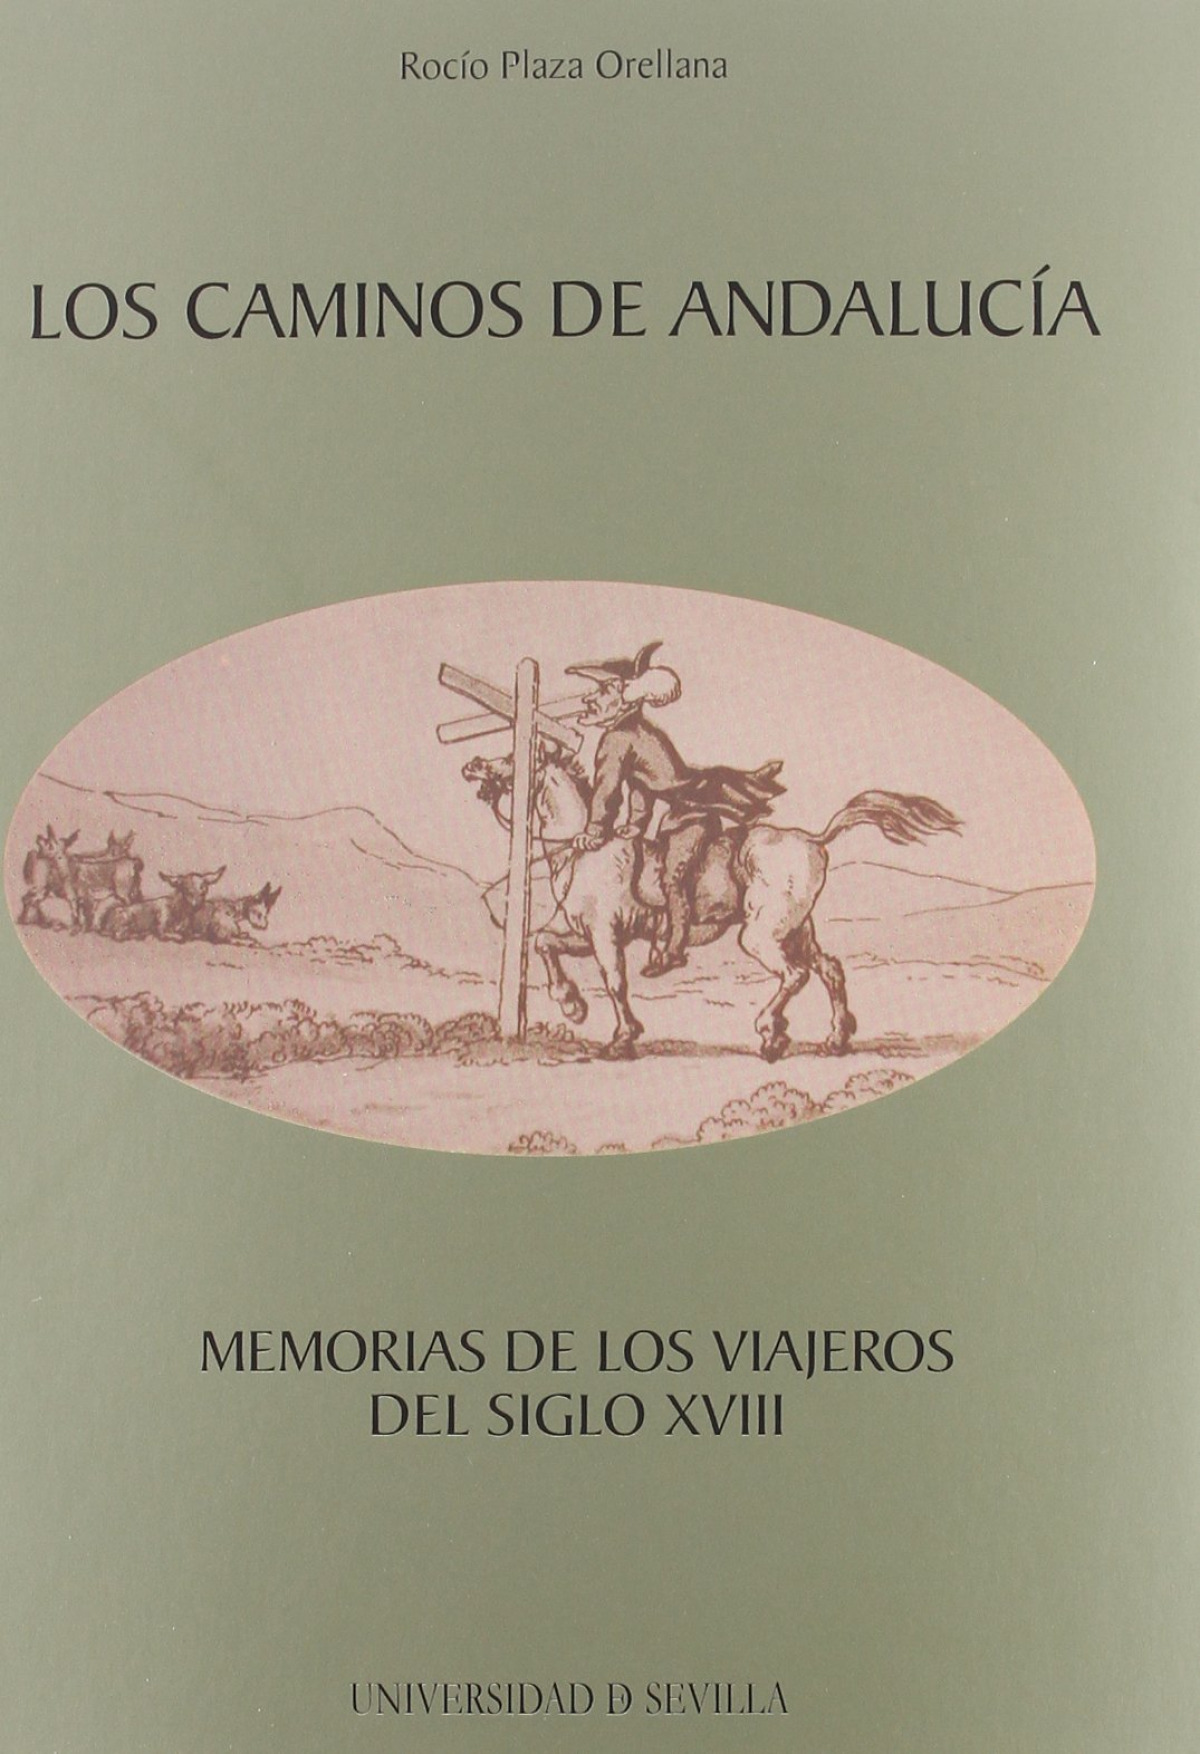 Caminos de andalucia, los. memorias de los viajeros del s.xv - Plaza Orellana, Rocio